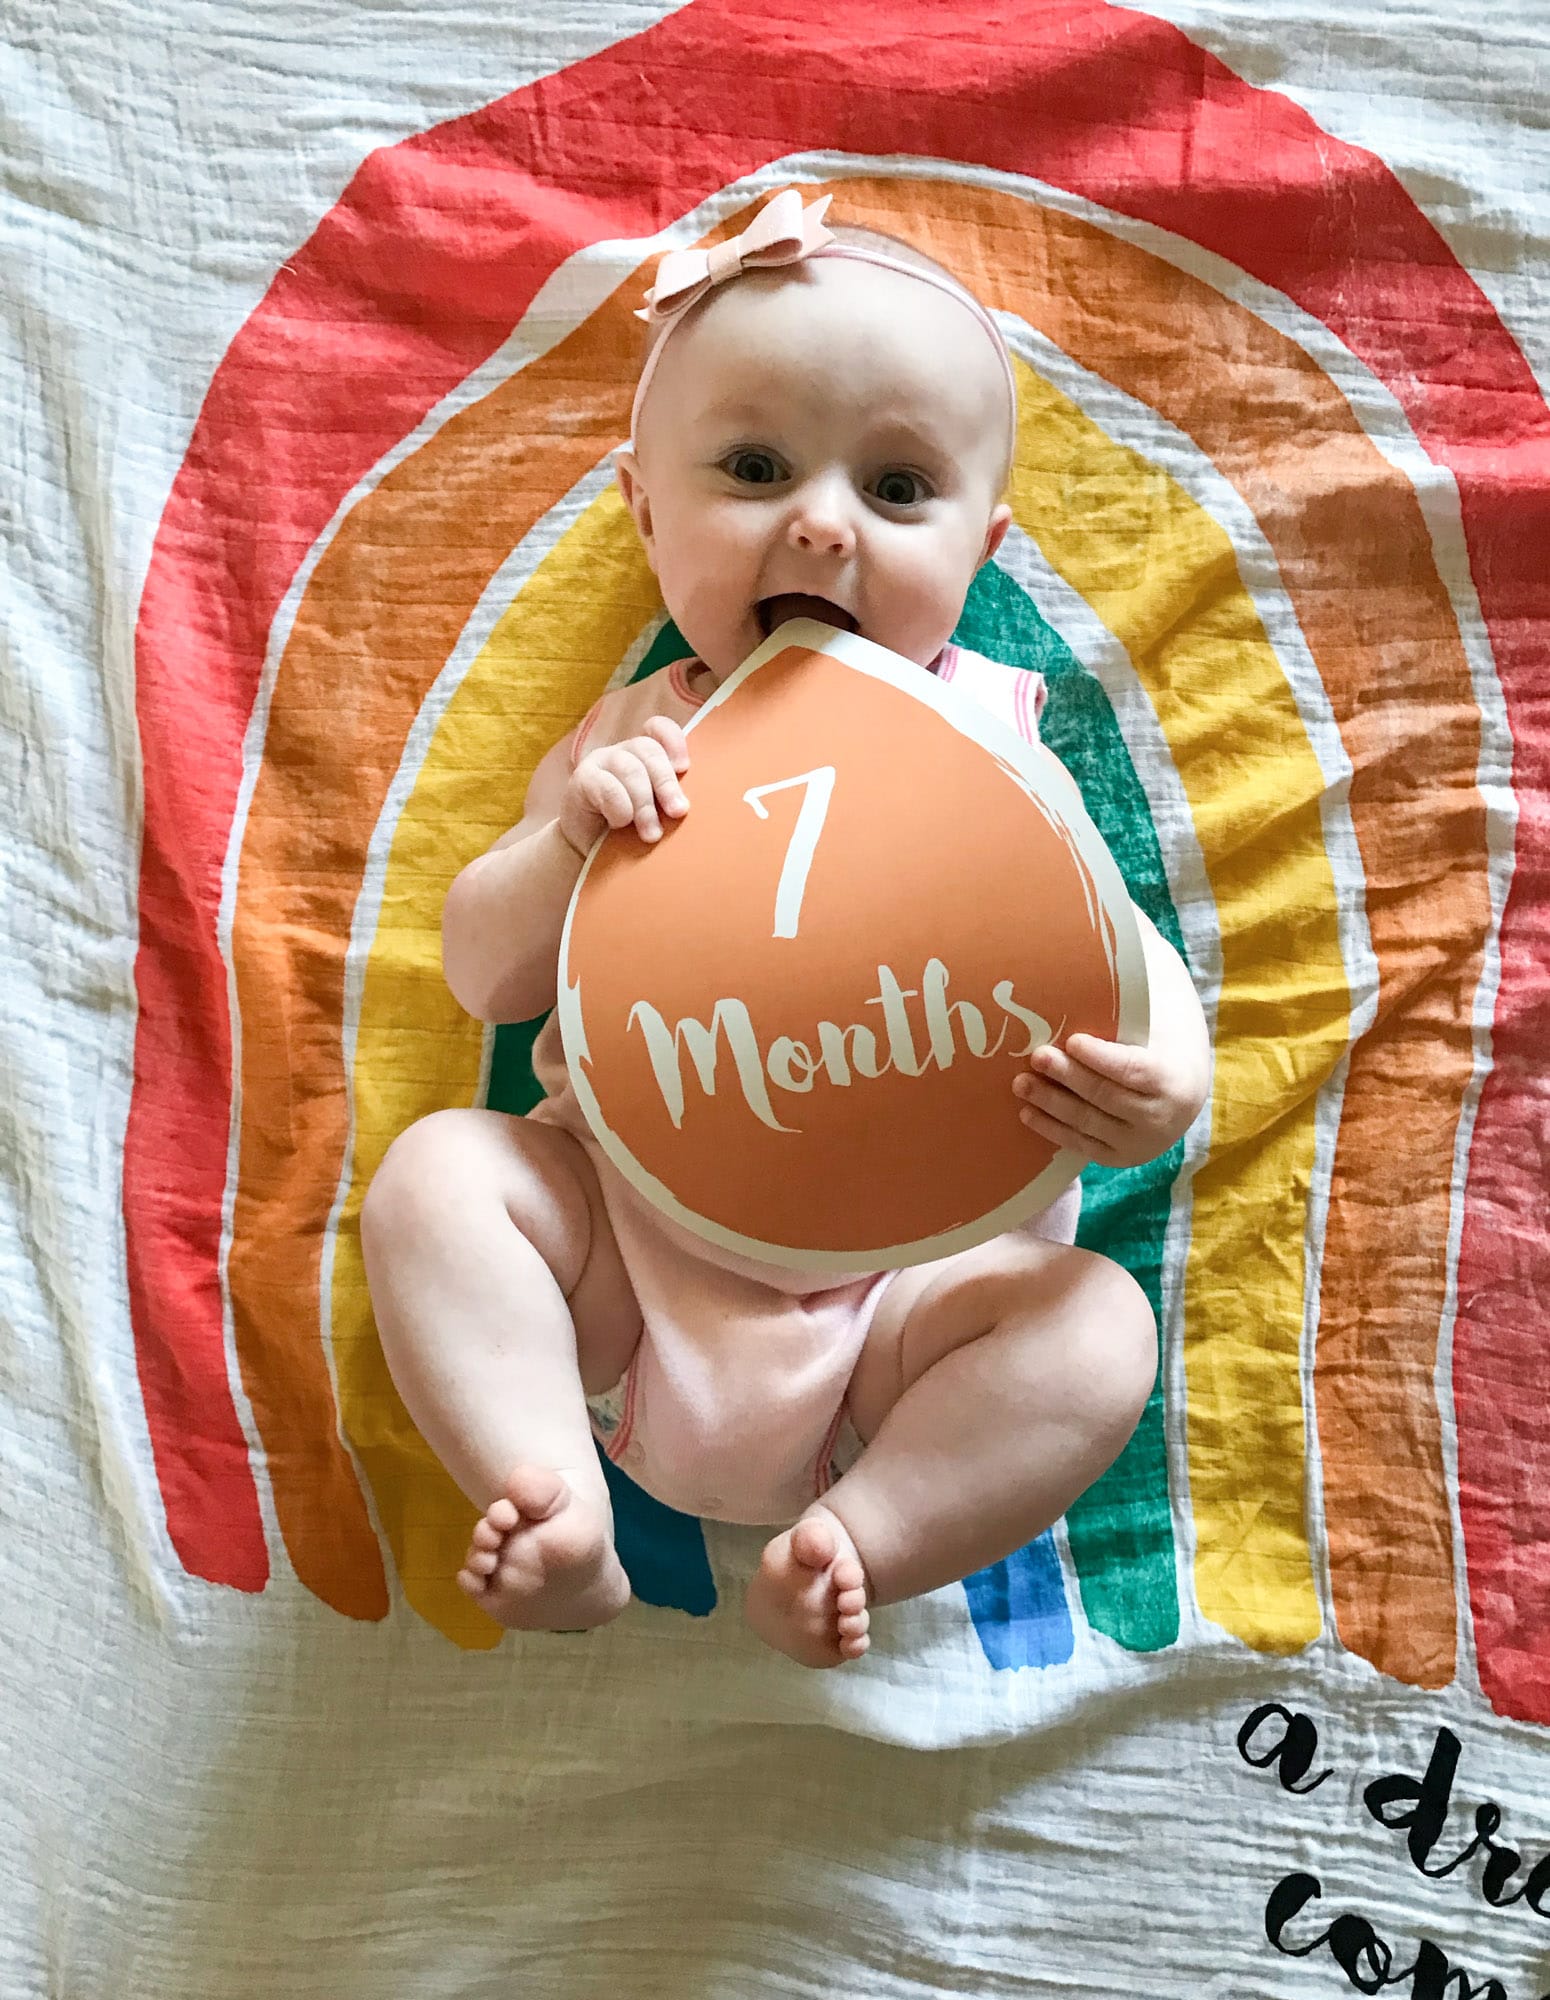 emilia at 7 months I howsweeteats.com